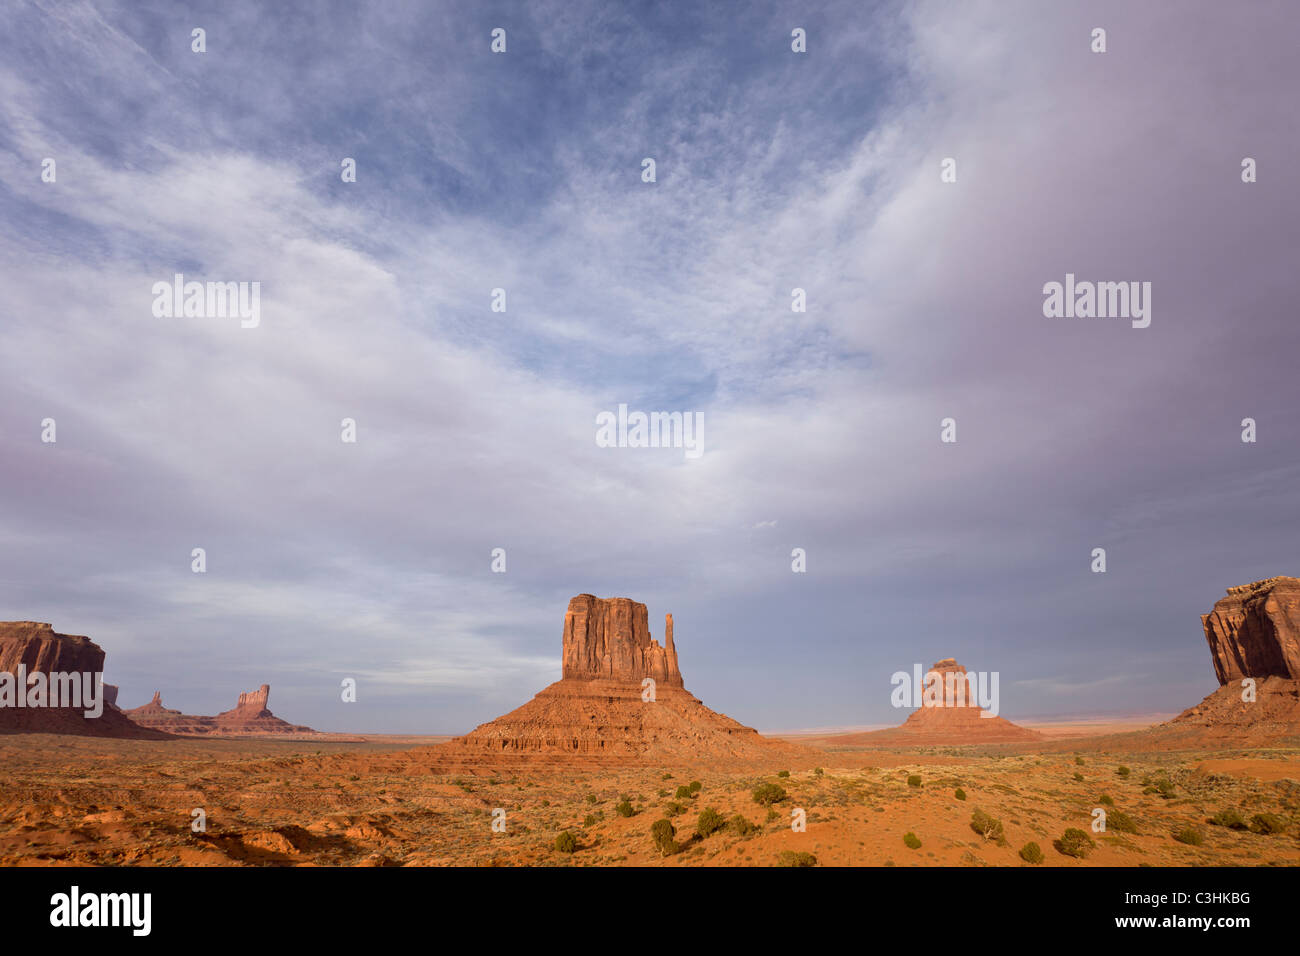 Monument Valley Navajo Tribal Park, que se extiende a través de la frontera entre Arizona y Utah, en el suroeste de los Estados Unidos. Foto de stock